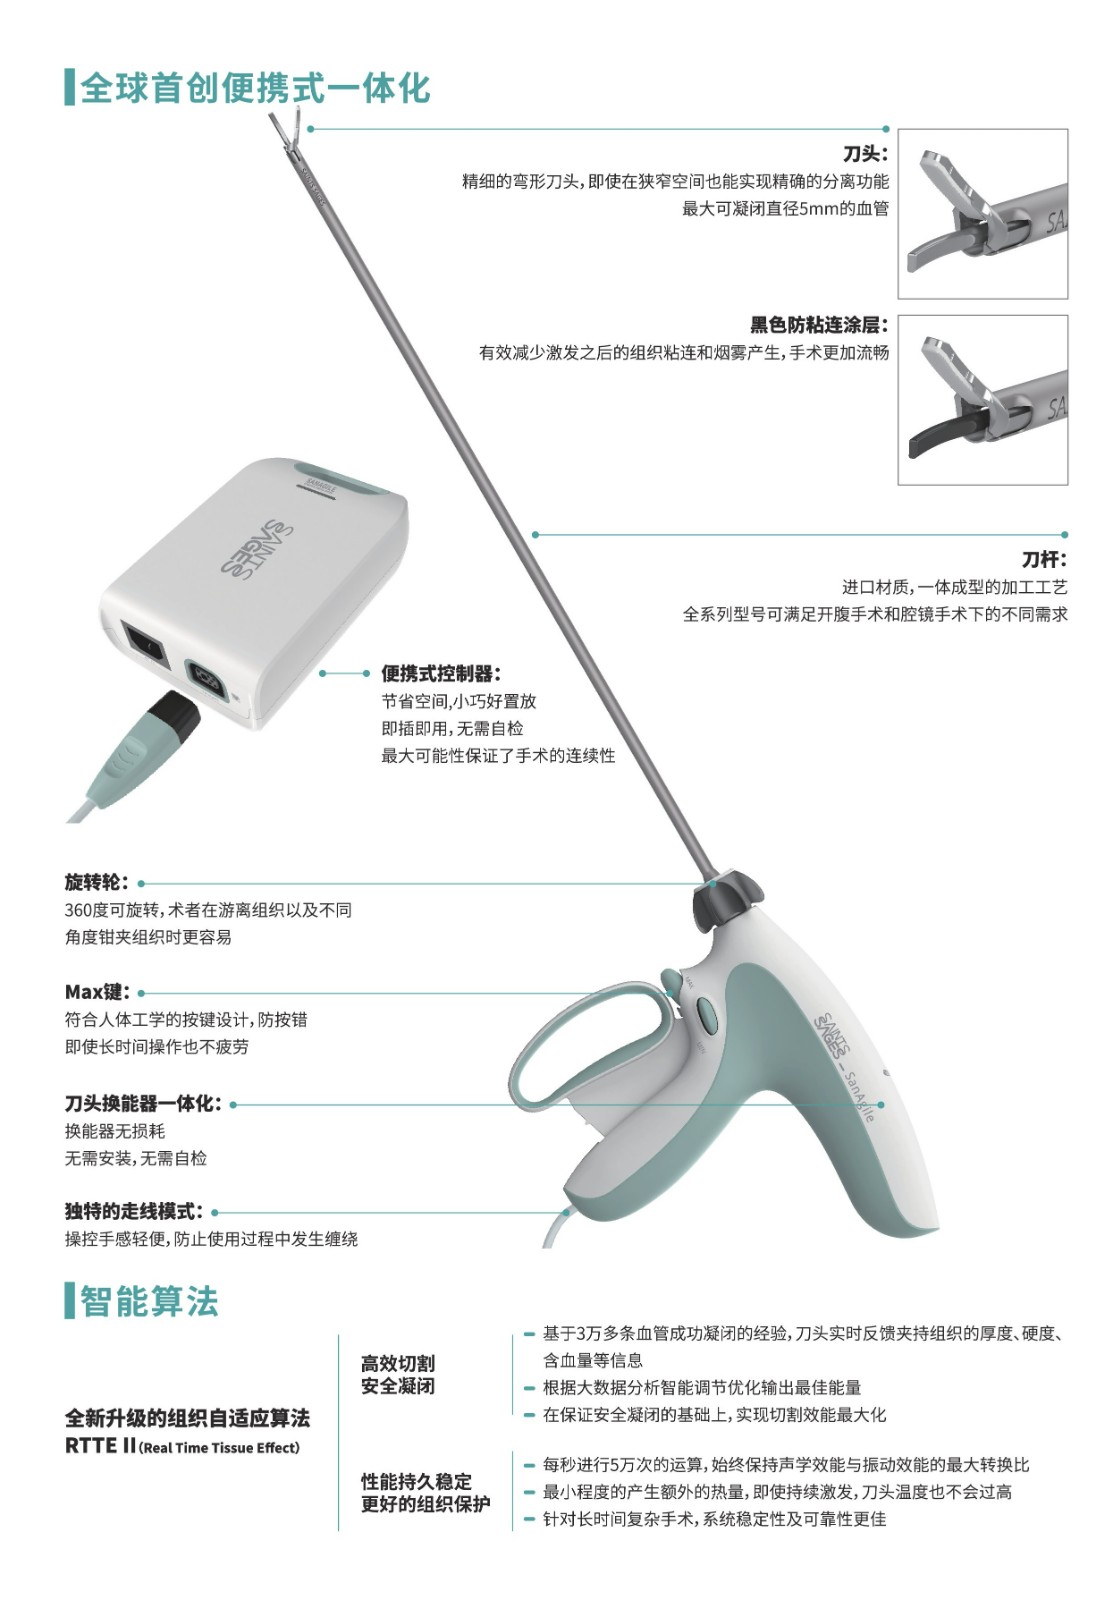 奥林巴斯超声刀USG-400 外科手术能量平台:奥林巴斯超声刀价格_型号_参数|上海掌动医疗科技有限公司